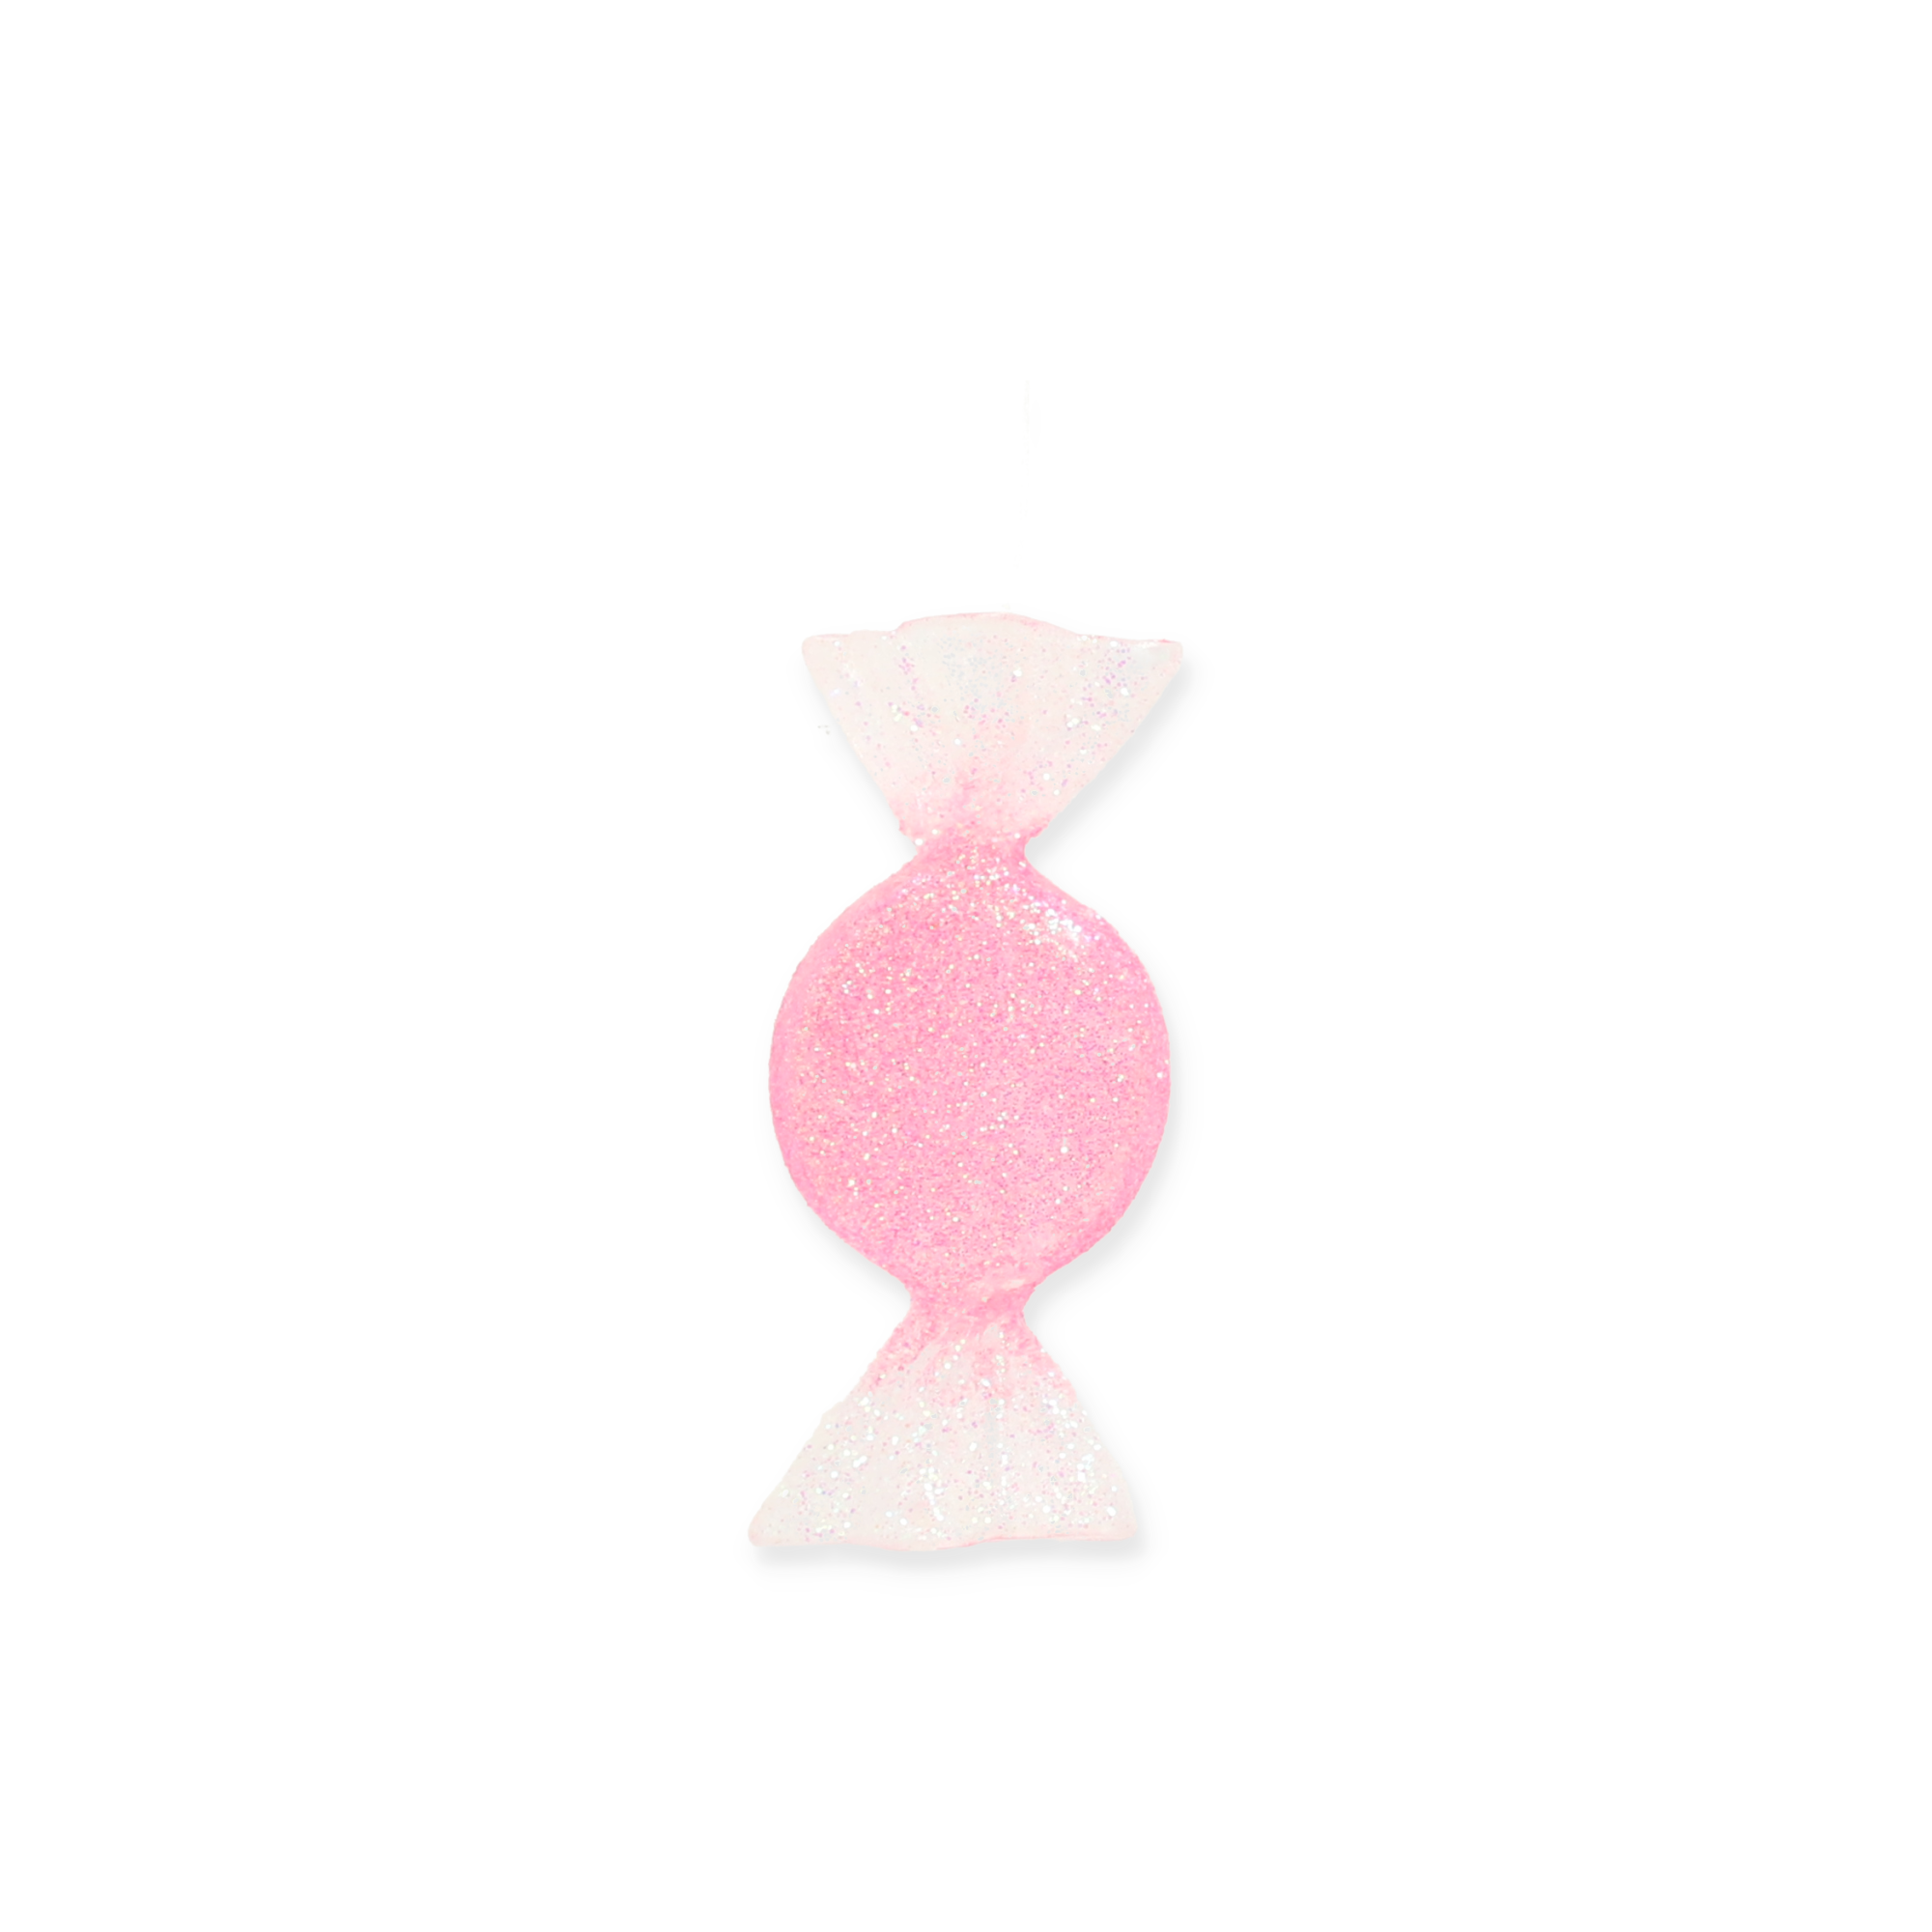 Christbaumschmuck Bonbon rosa 3,5 x 8,5 cm + product picture